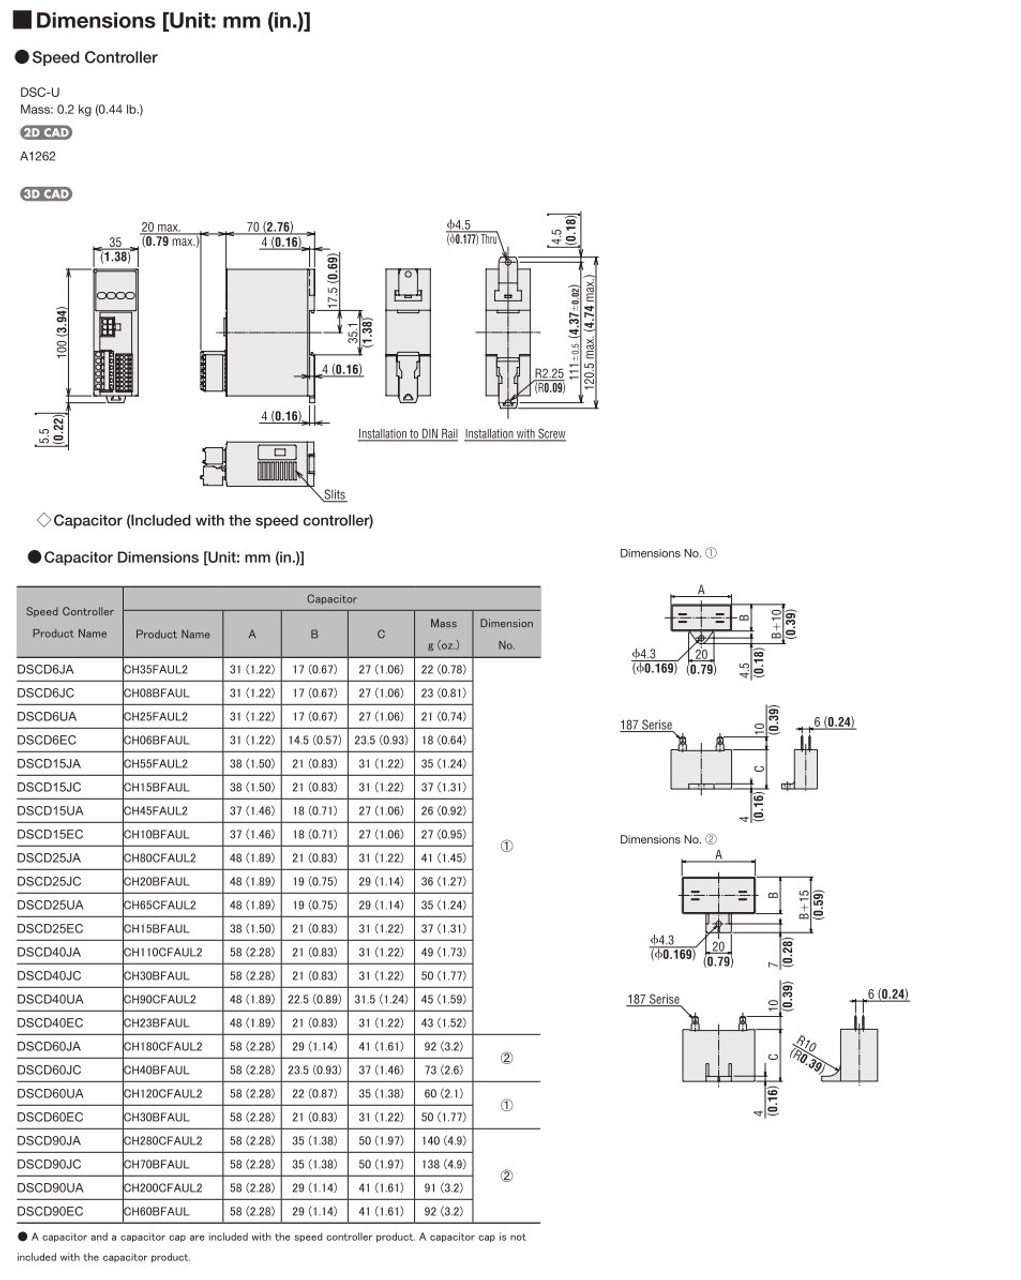 SCM315EC-18 / DSCD15EC - Dimensions